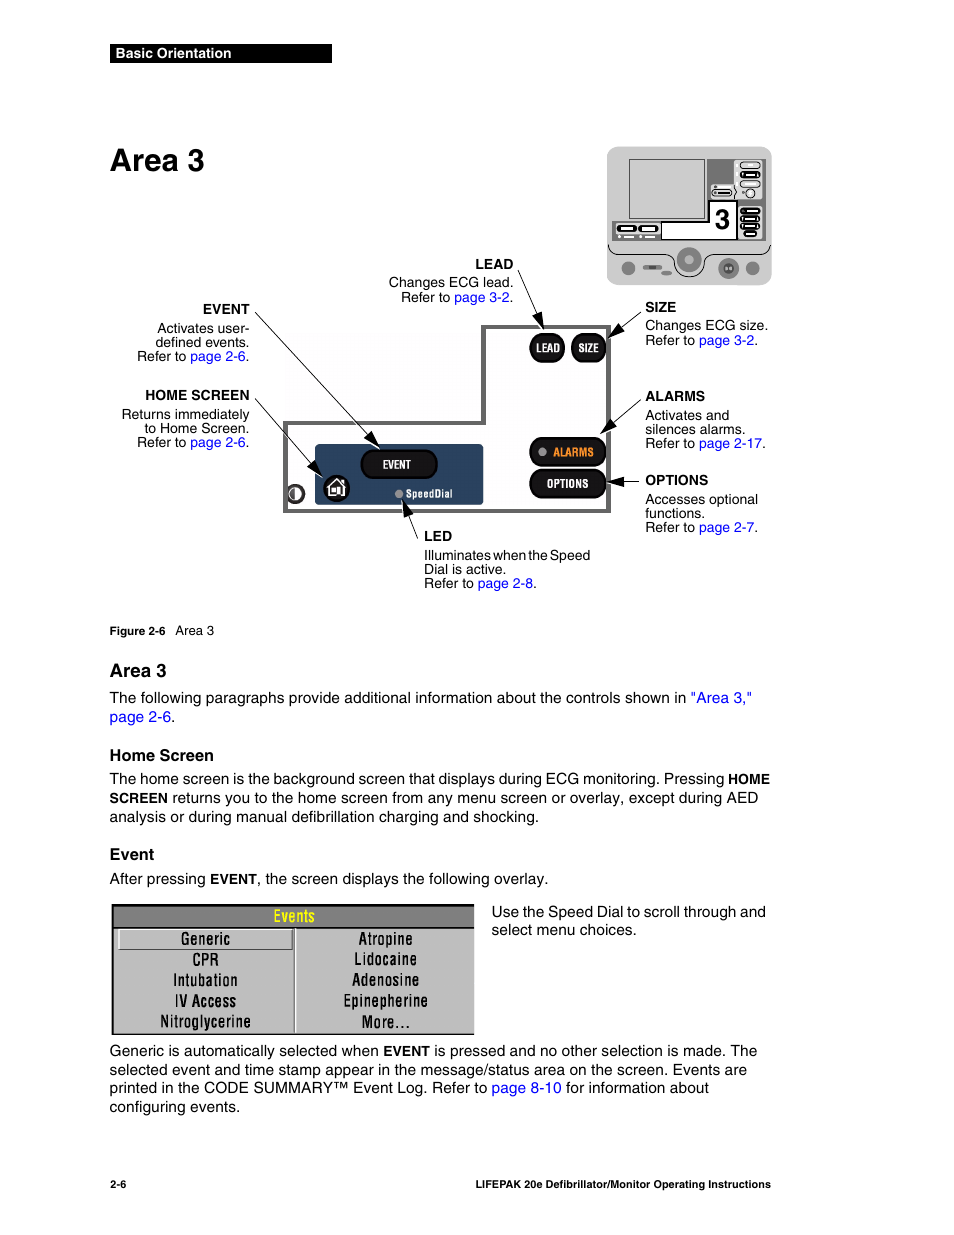 Area 3, Area 3 -6 | Physio-Control LIFEPAK 20e User Manual | Page 28 / 218